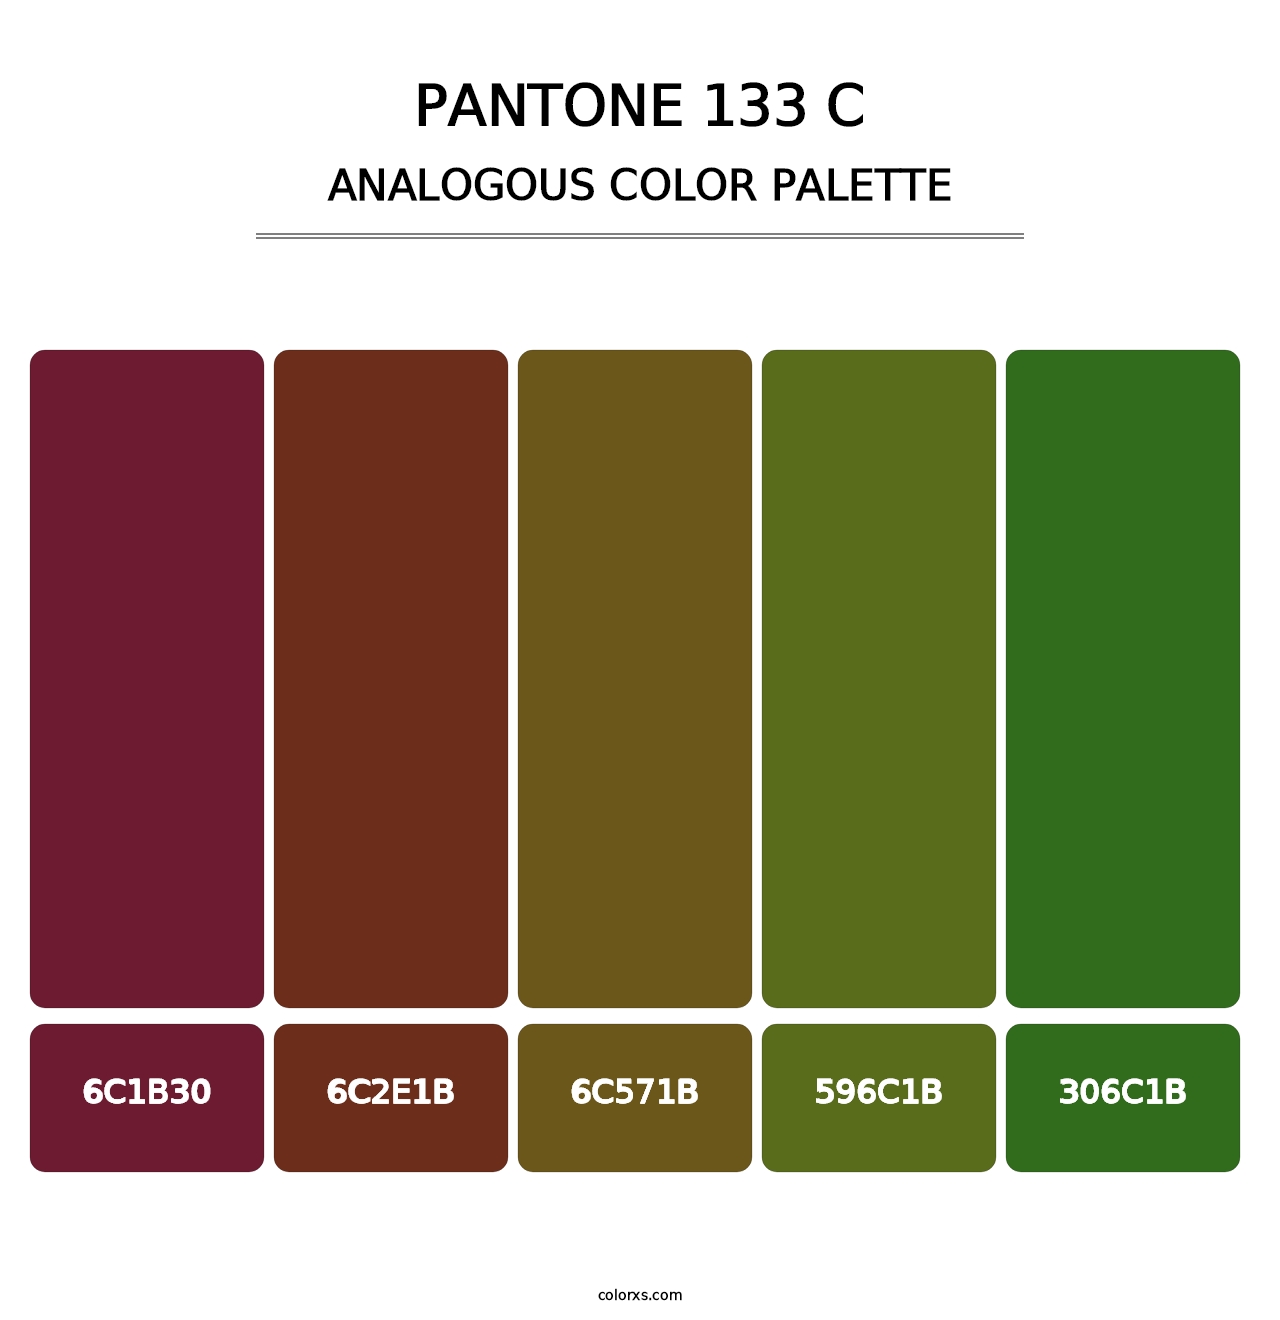 PANTONE 133 C - Analogous Color Palette